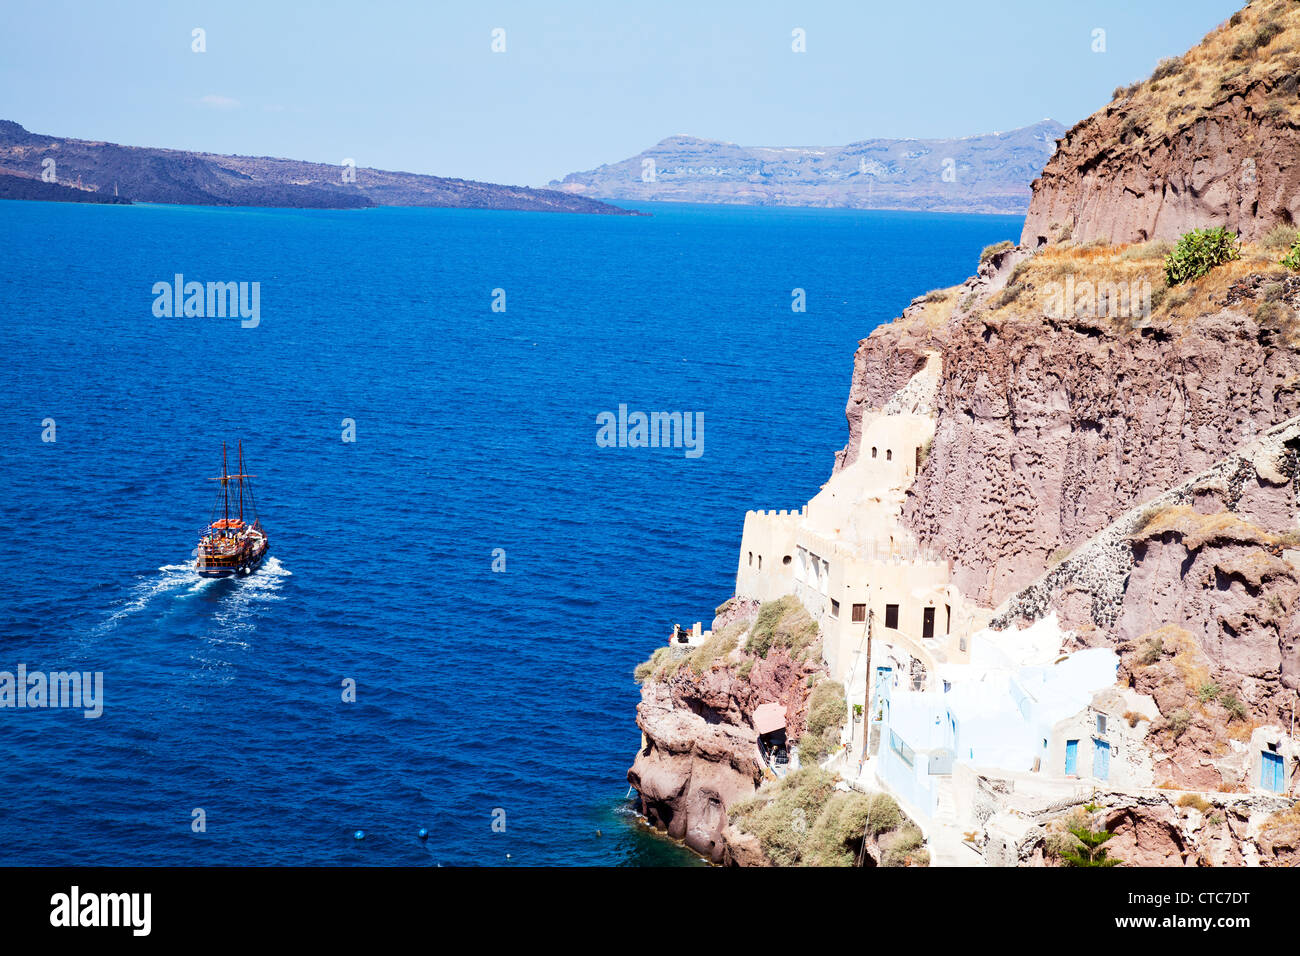 Barca a Vela passa case costruite nella roccia a Thira, Santorini, isola greca, grecia, sulla Caldera Foto Stock